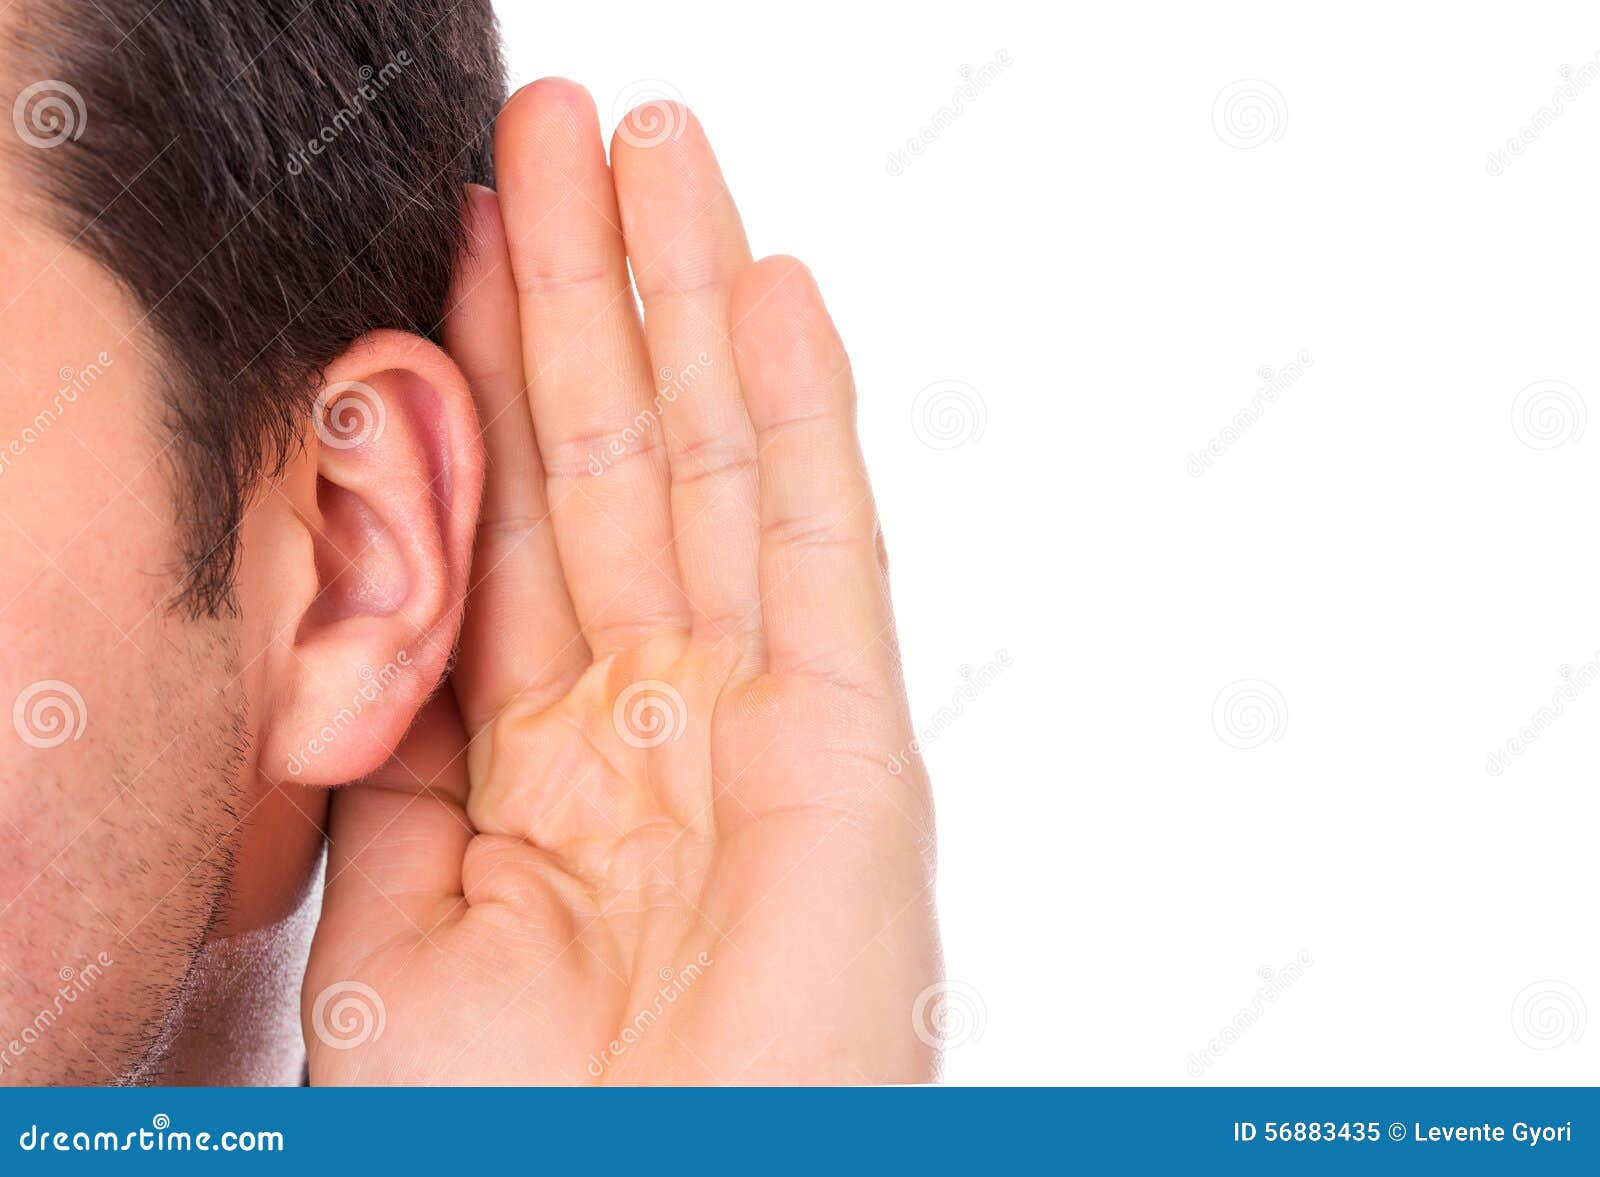 ear listening secret